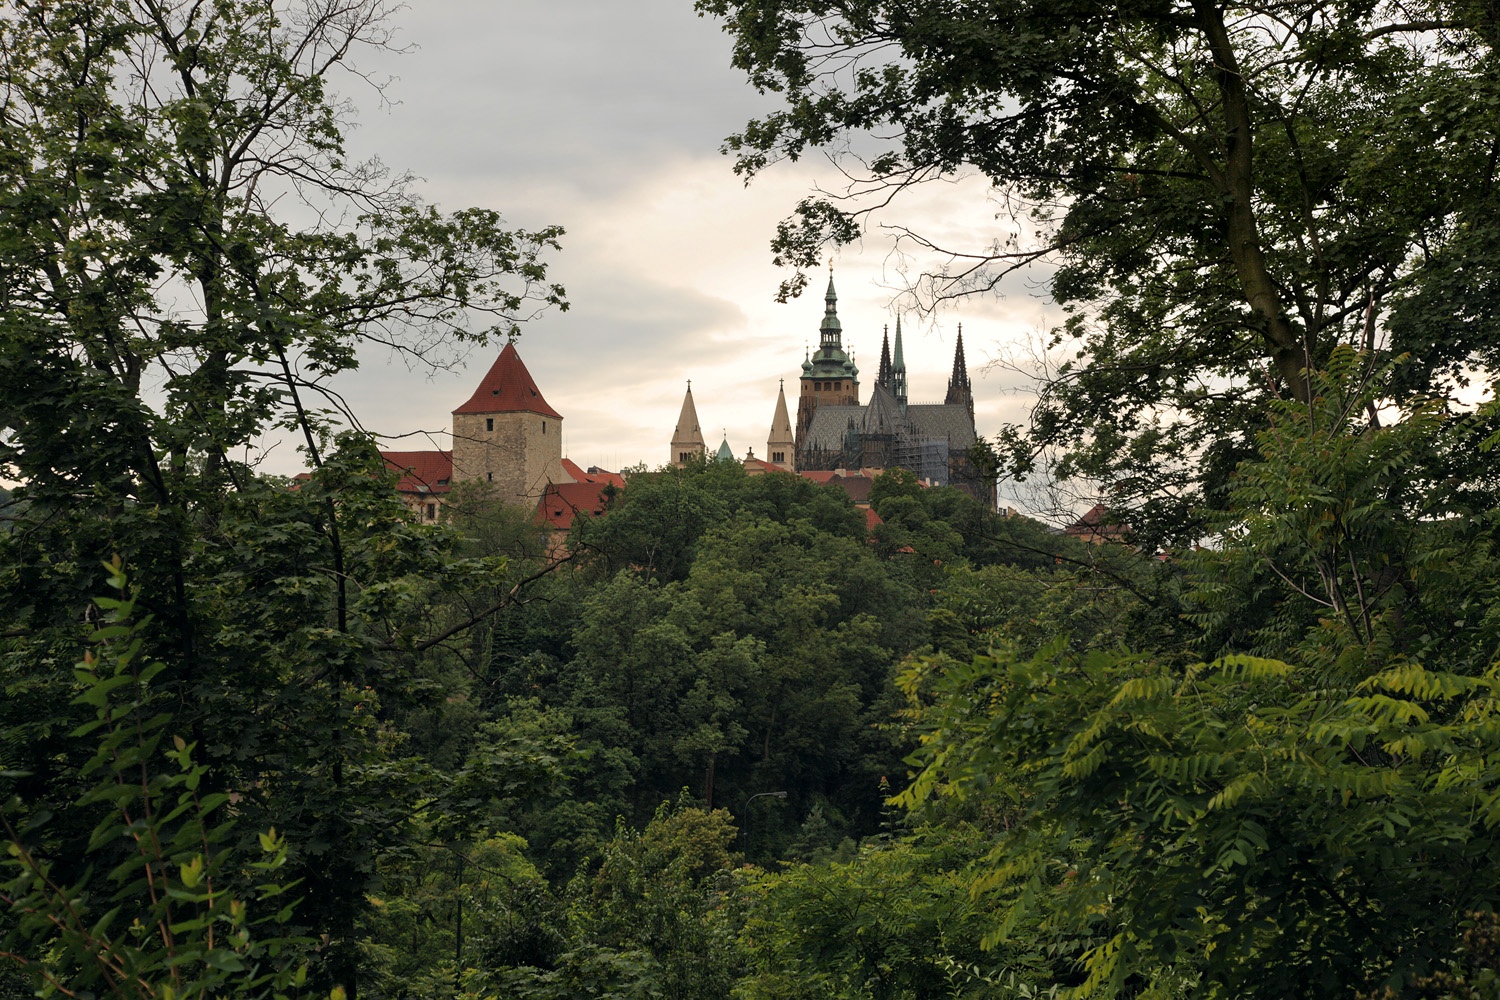 bill-hocker-the-castle-prague-czech-republic-2013